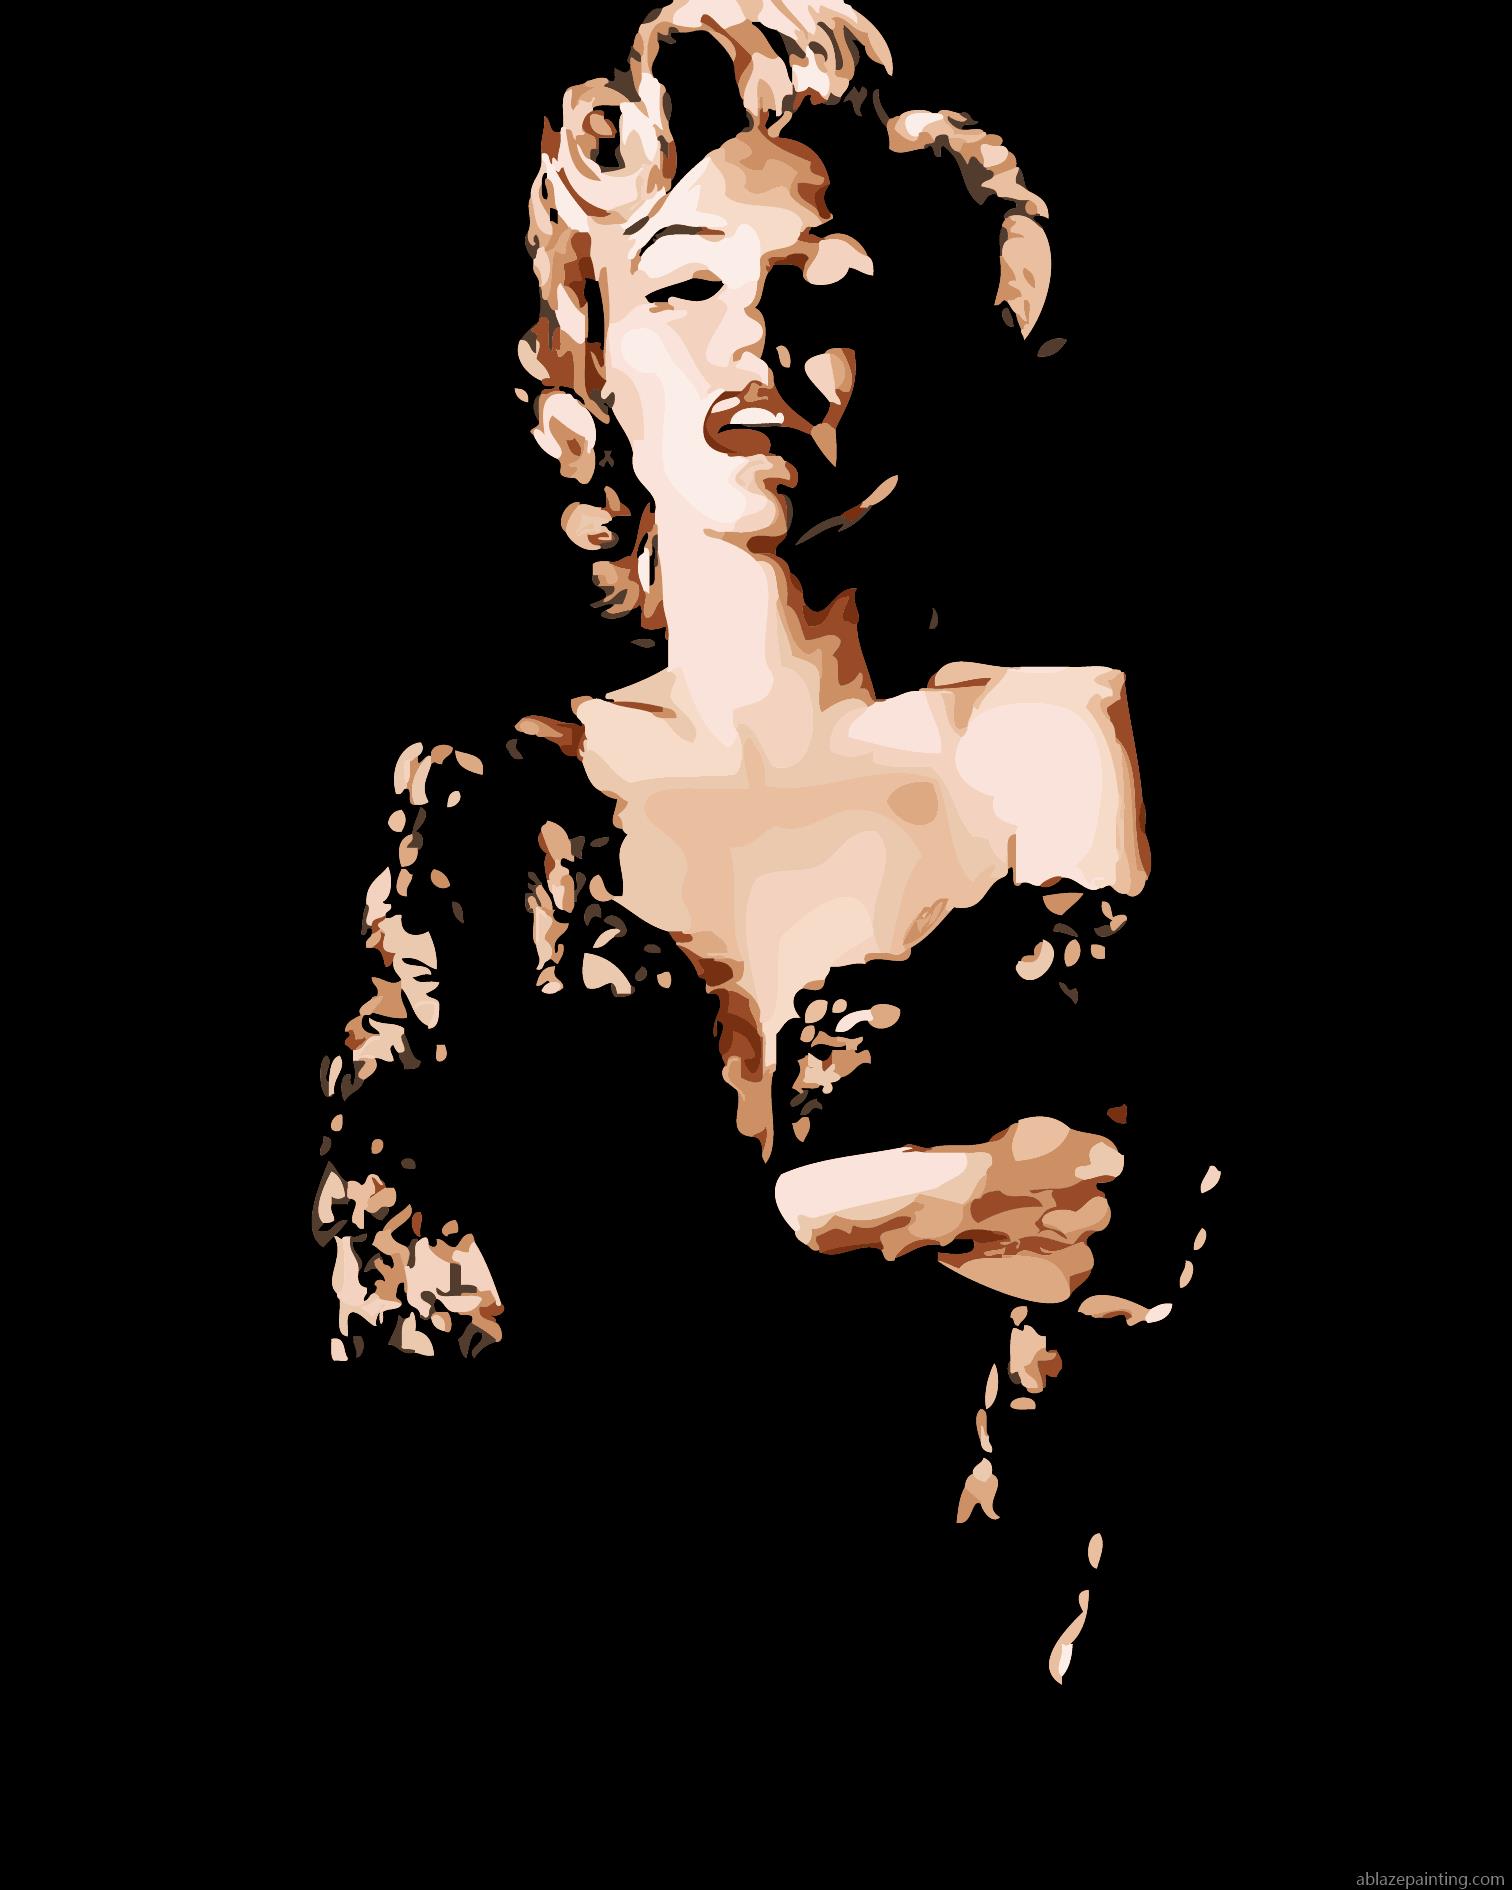 Marilyn Monroe In Black Dress People Paint By Numbers.jpg